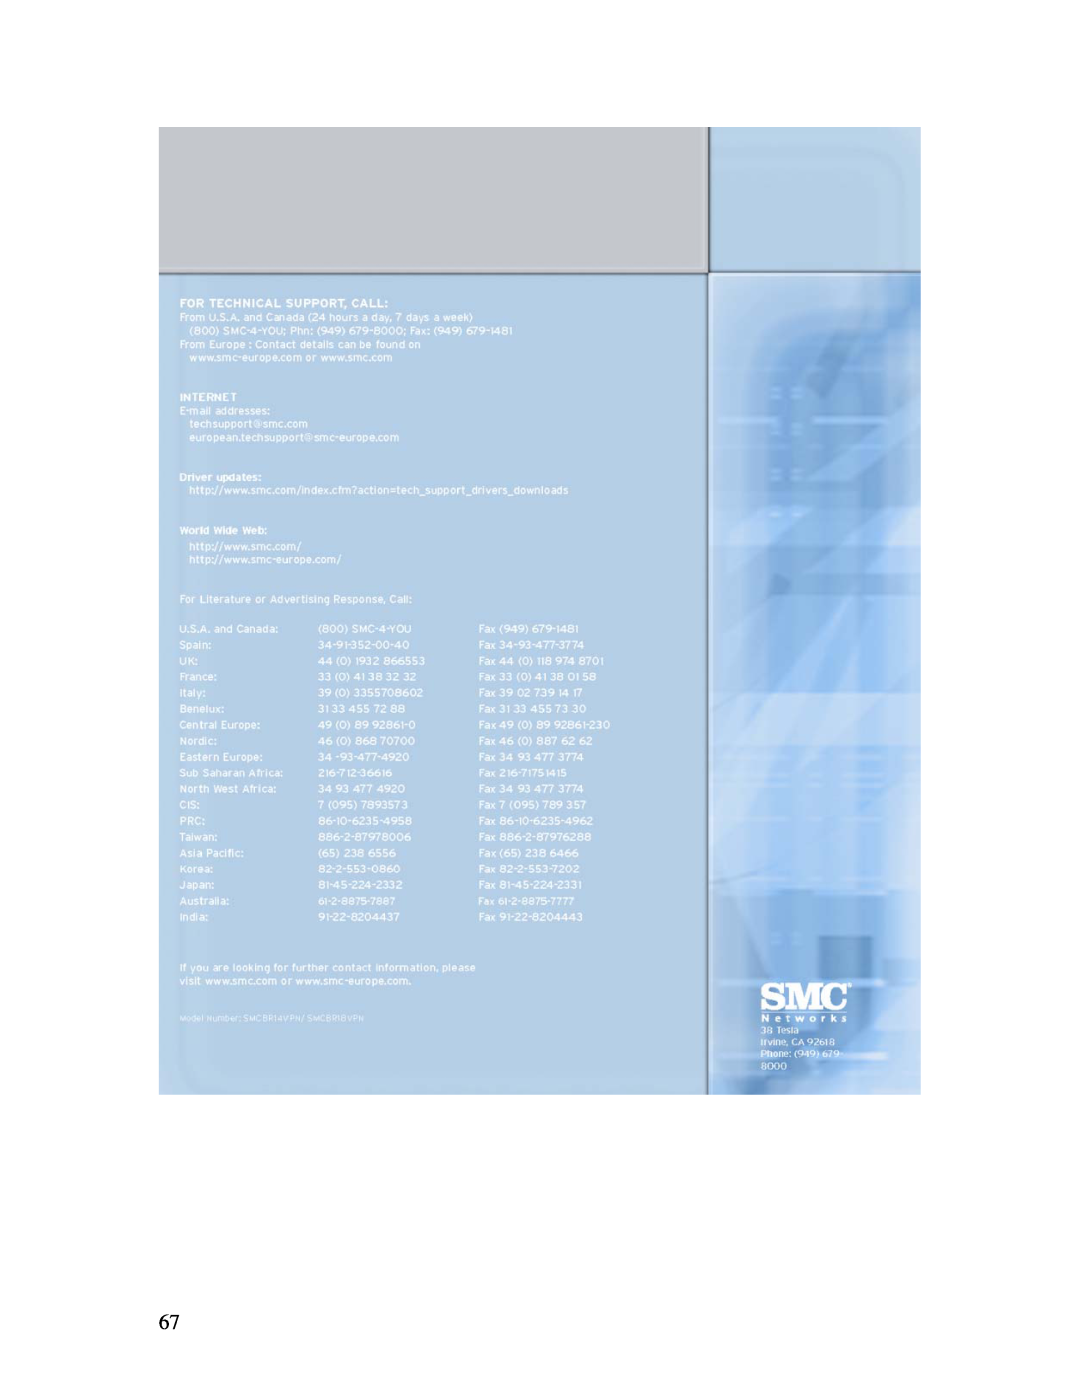 SMC Networks BR14VPN, SMCBR 18VPN manual 